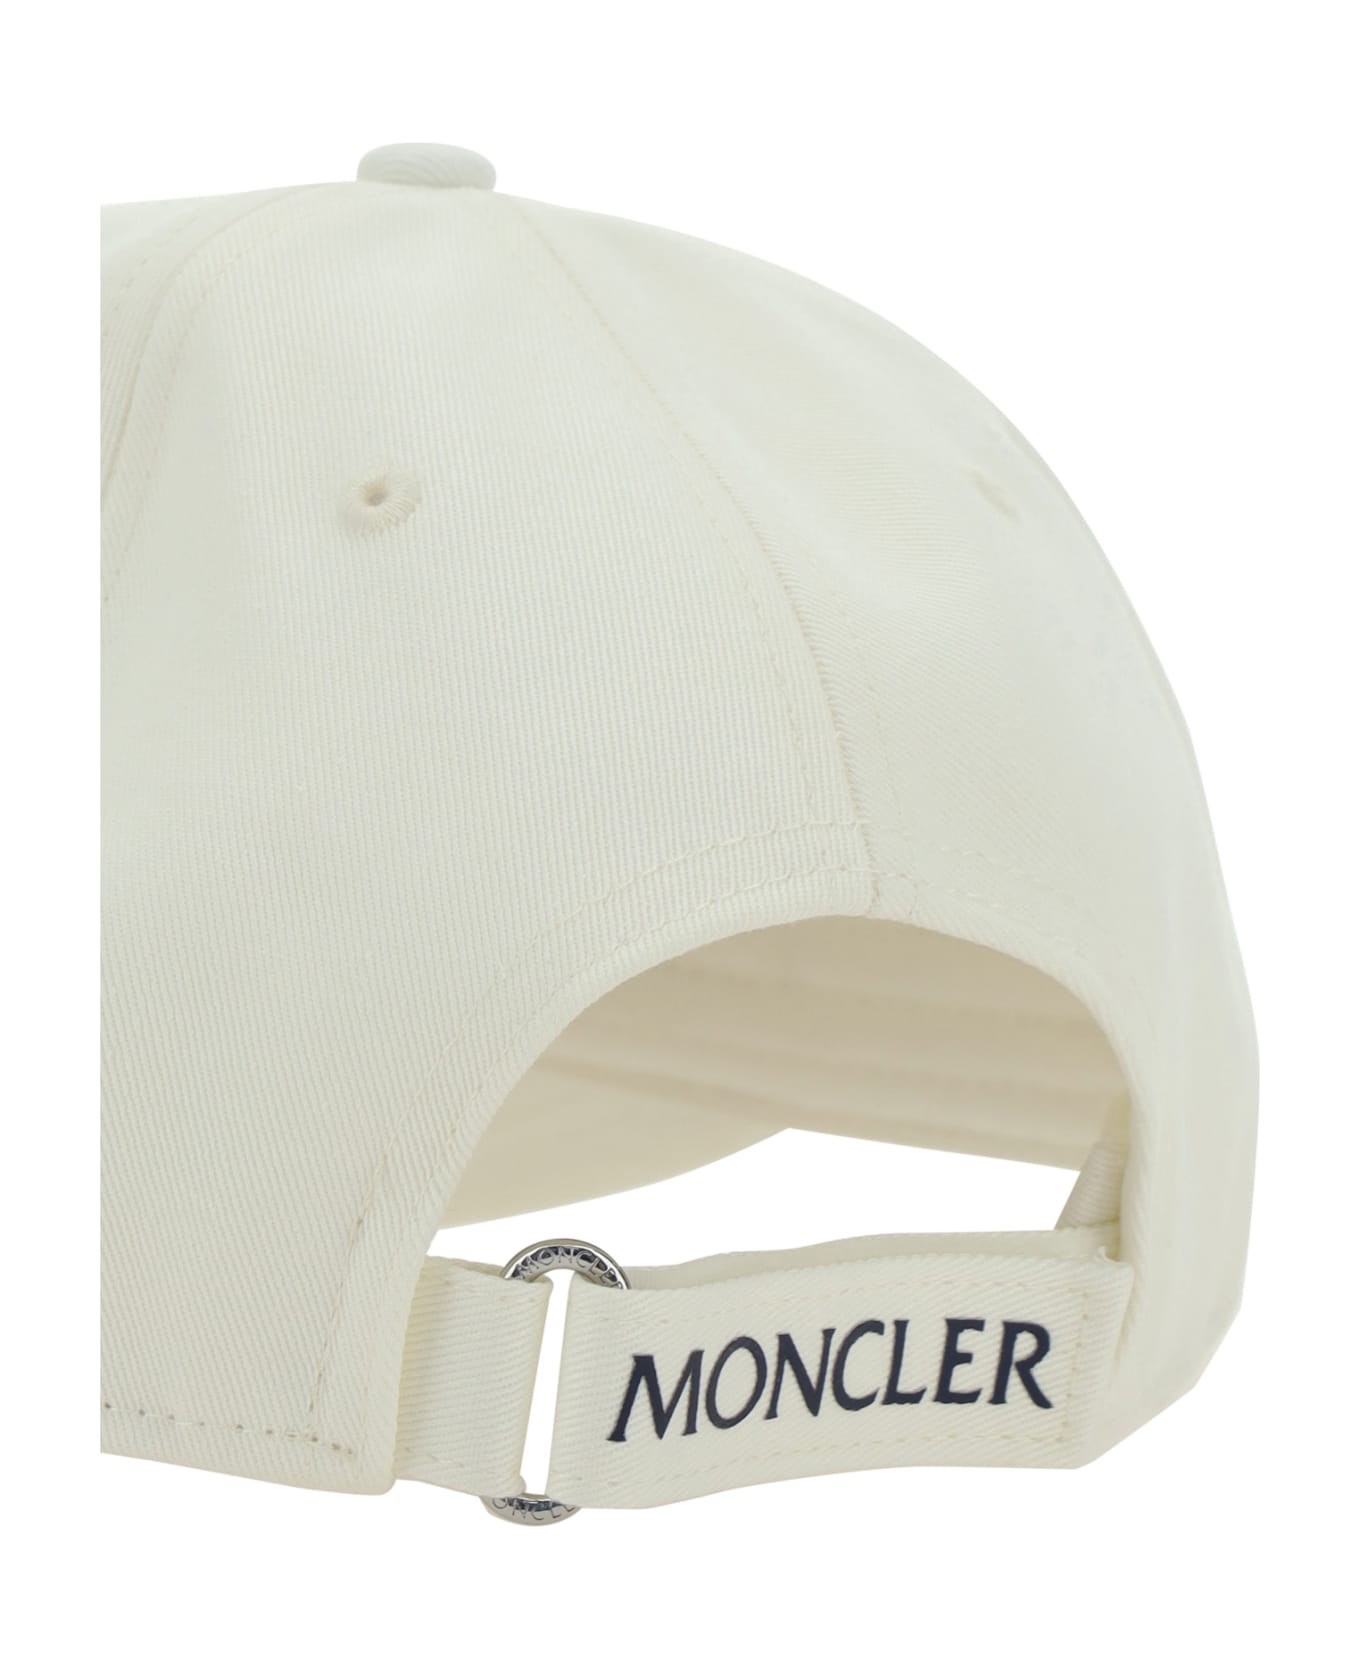 Moncler Baseball Cap - Non definito